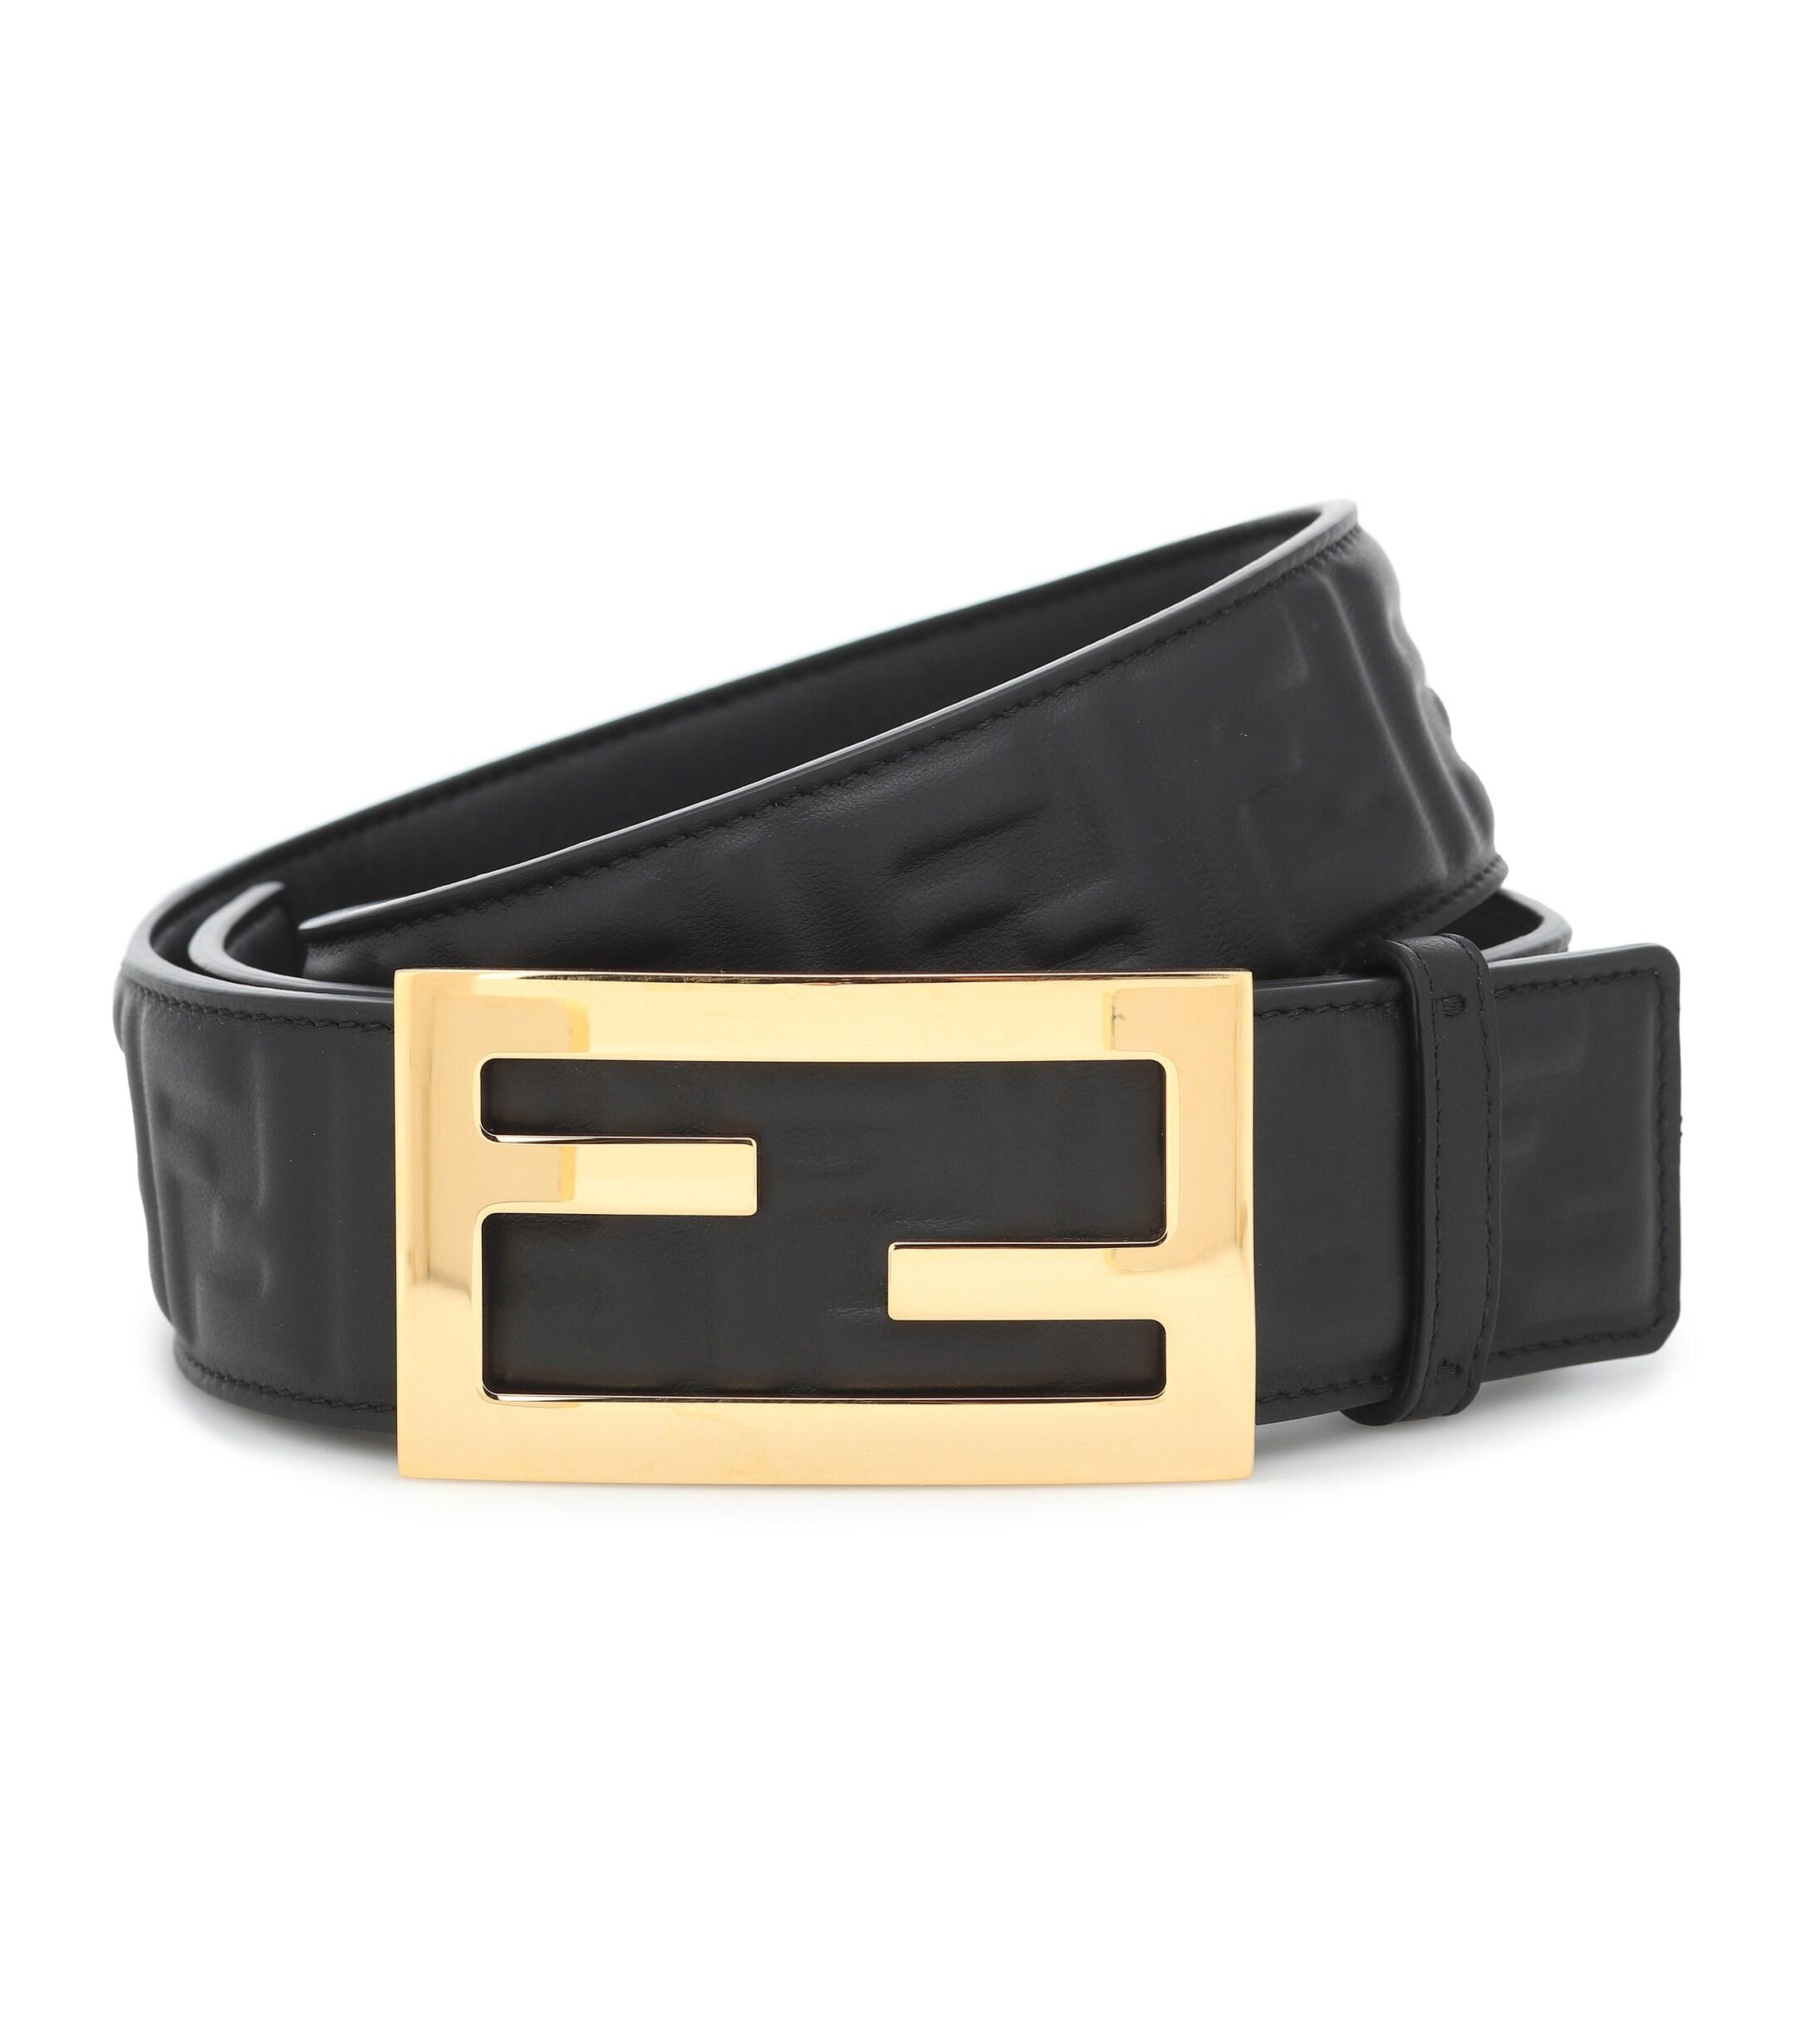 Fendi Baguette Leather Belt in Black - Lyst